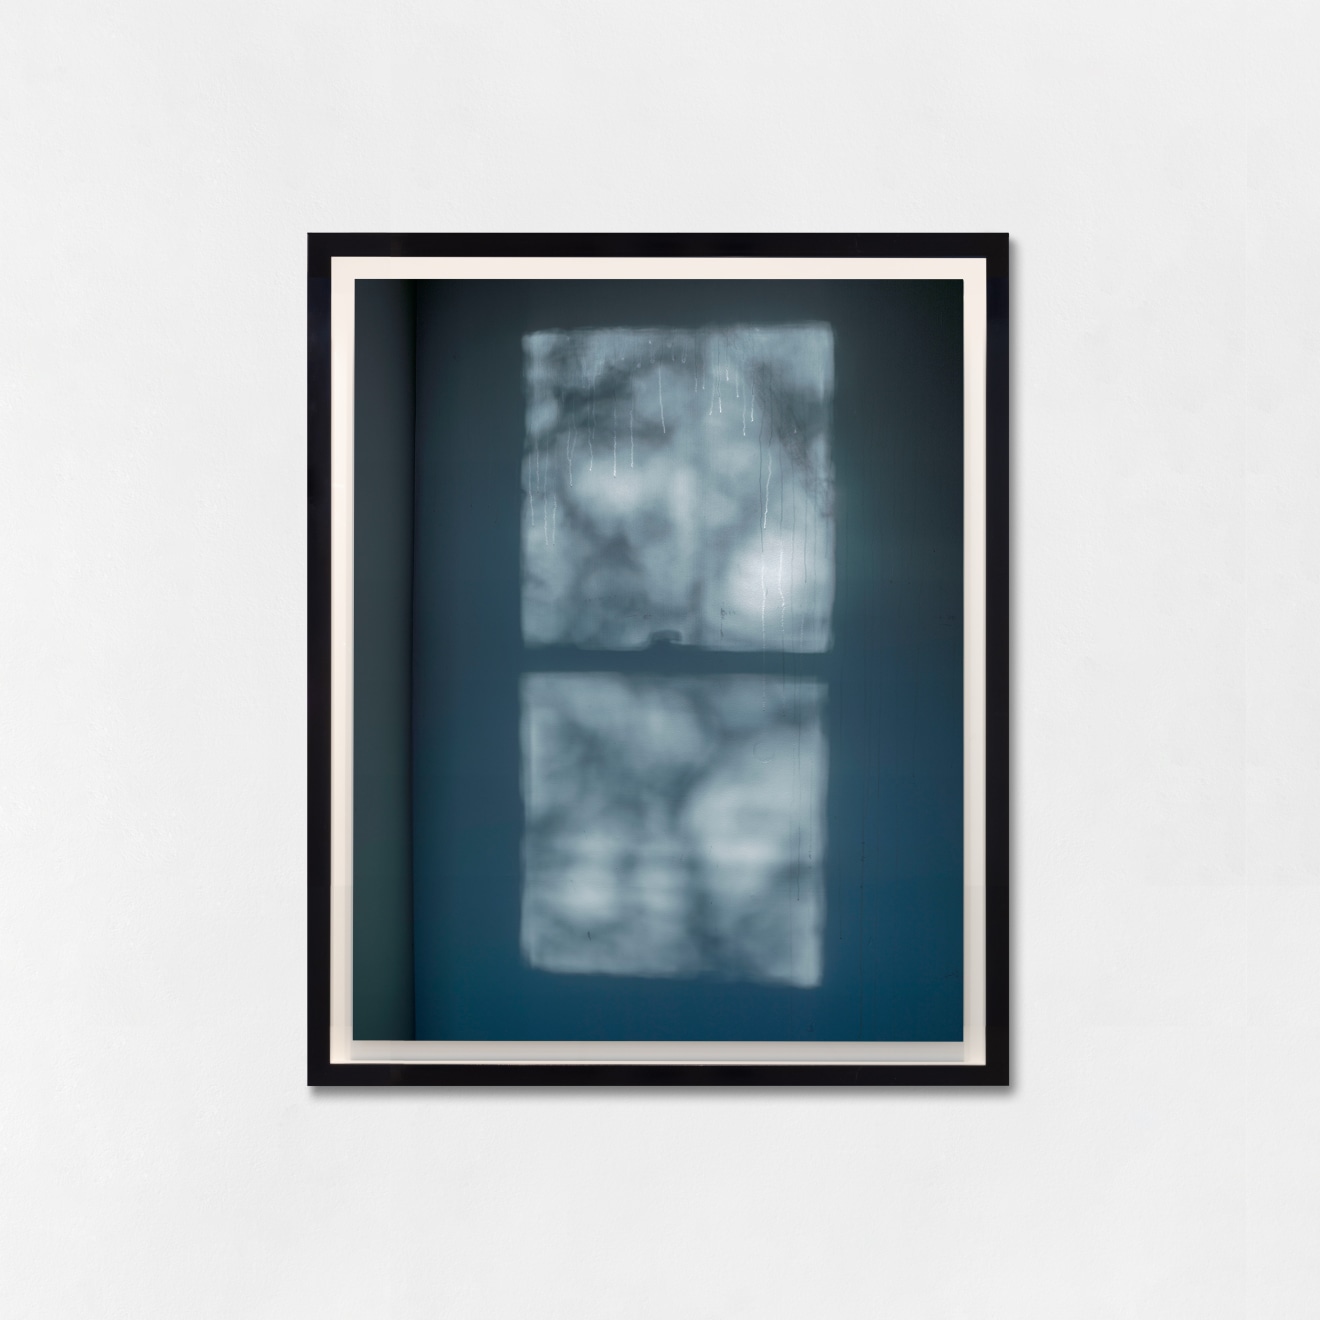 Alec Soth, Untitled (window), 2015